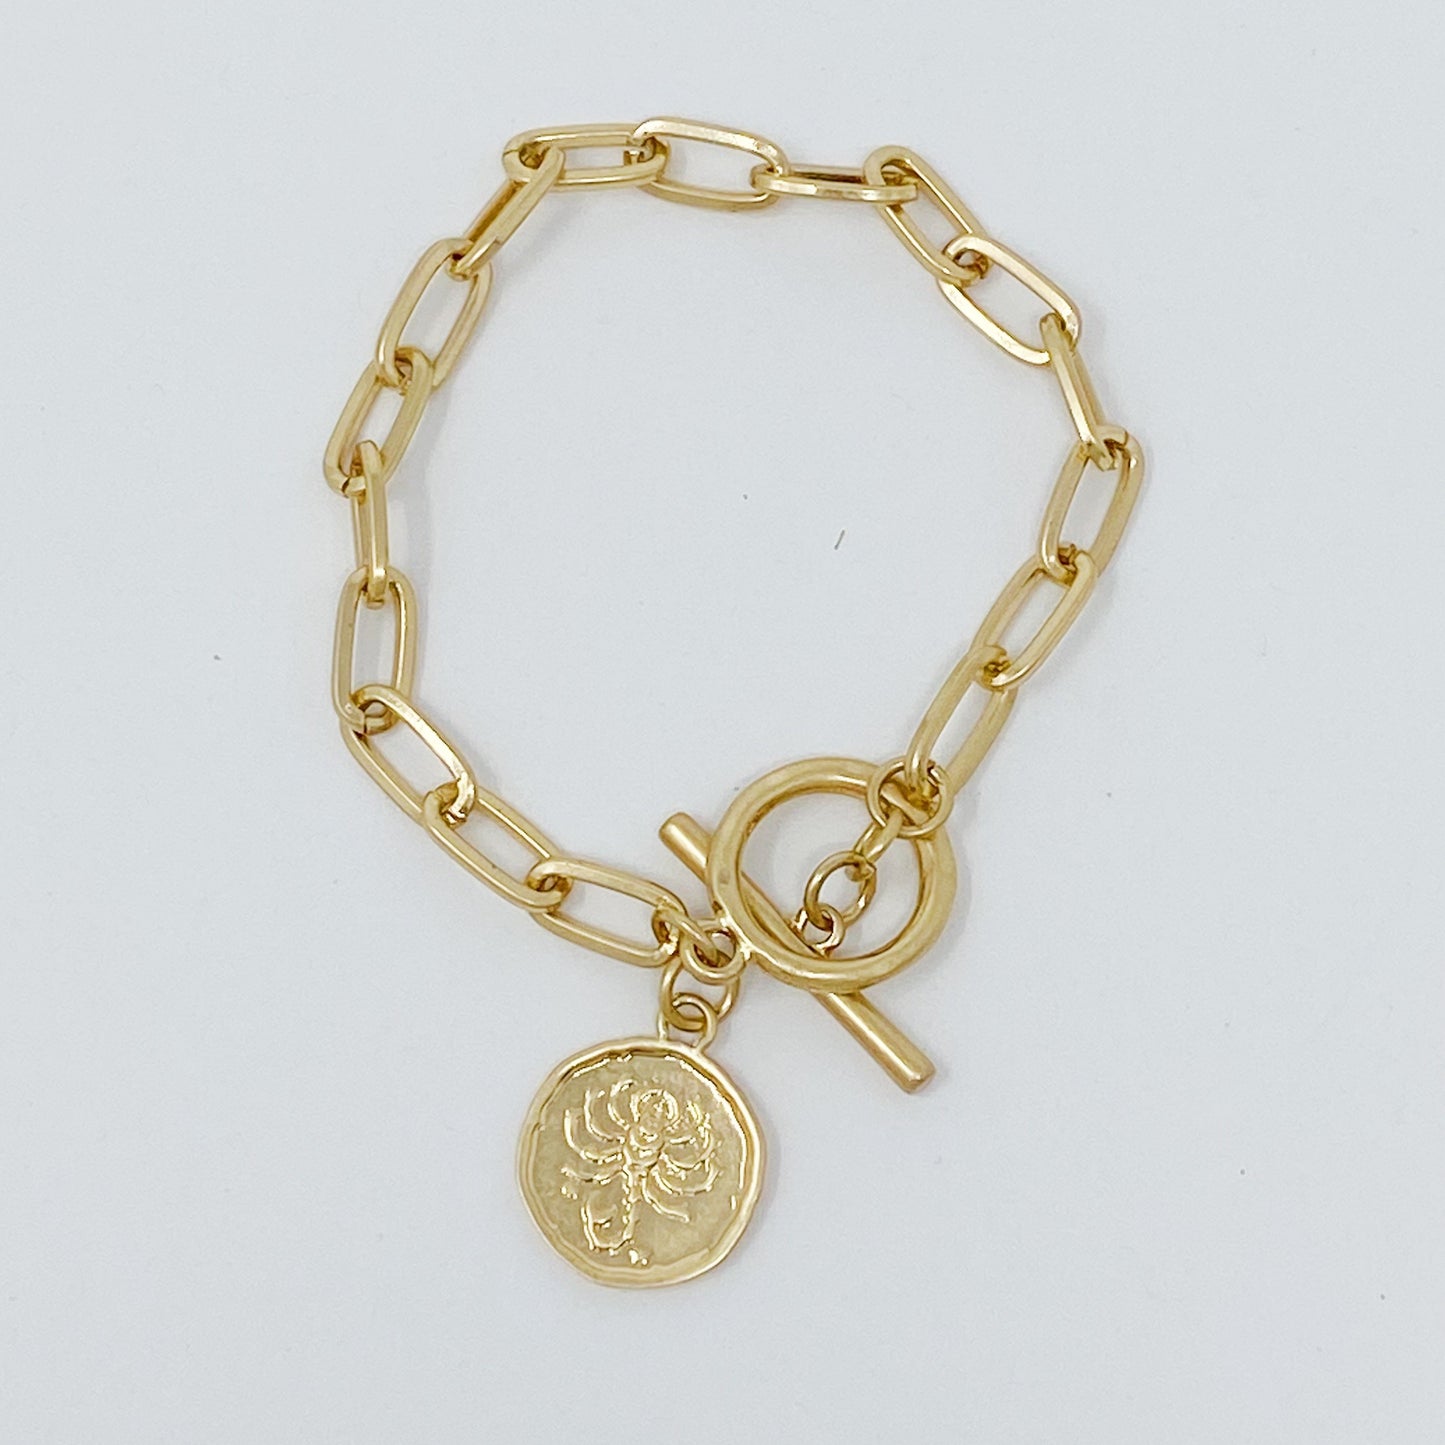 Zodiac Charm Chain Bracelet - Unlock the Stars on Your Wrist